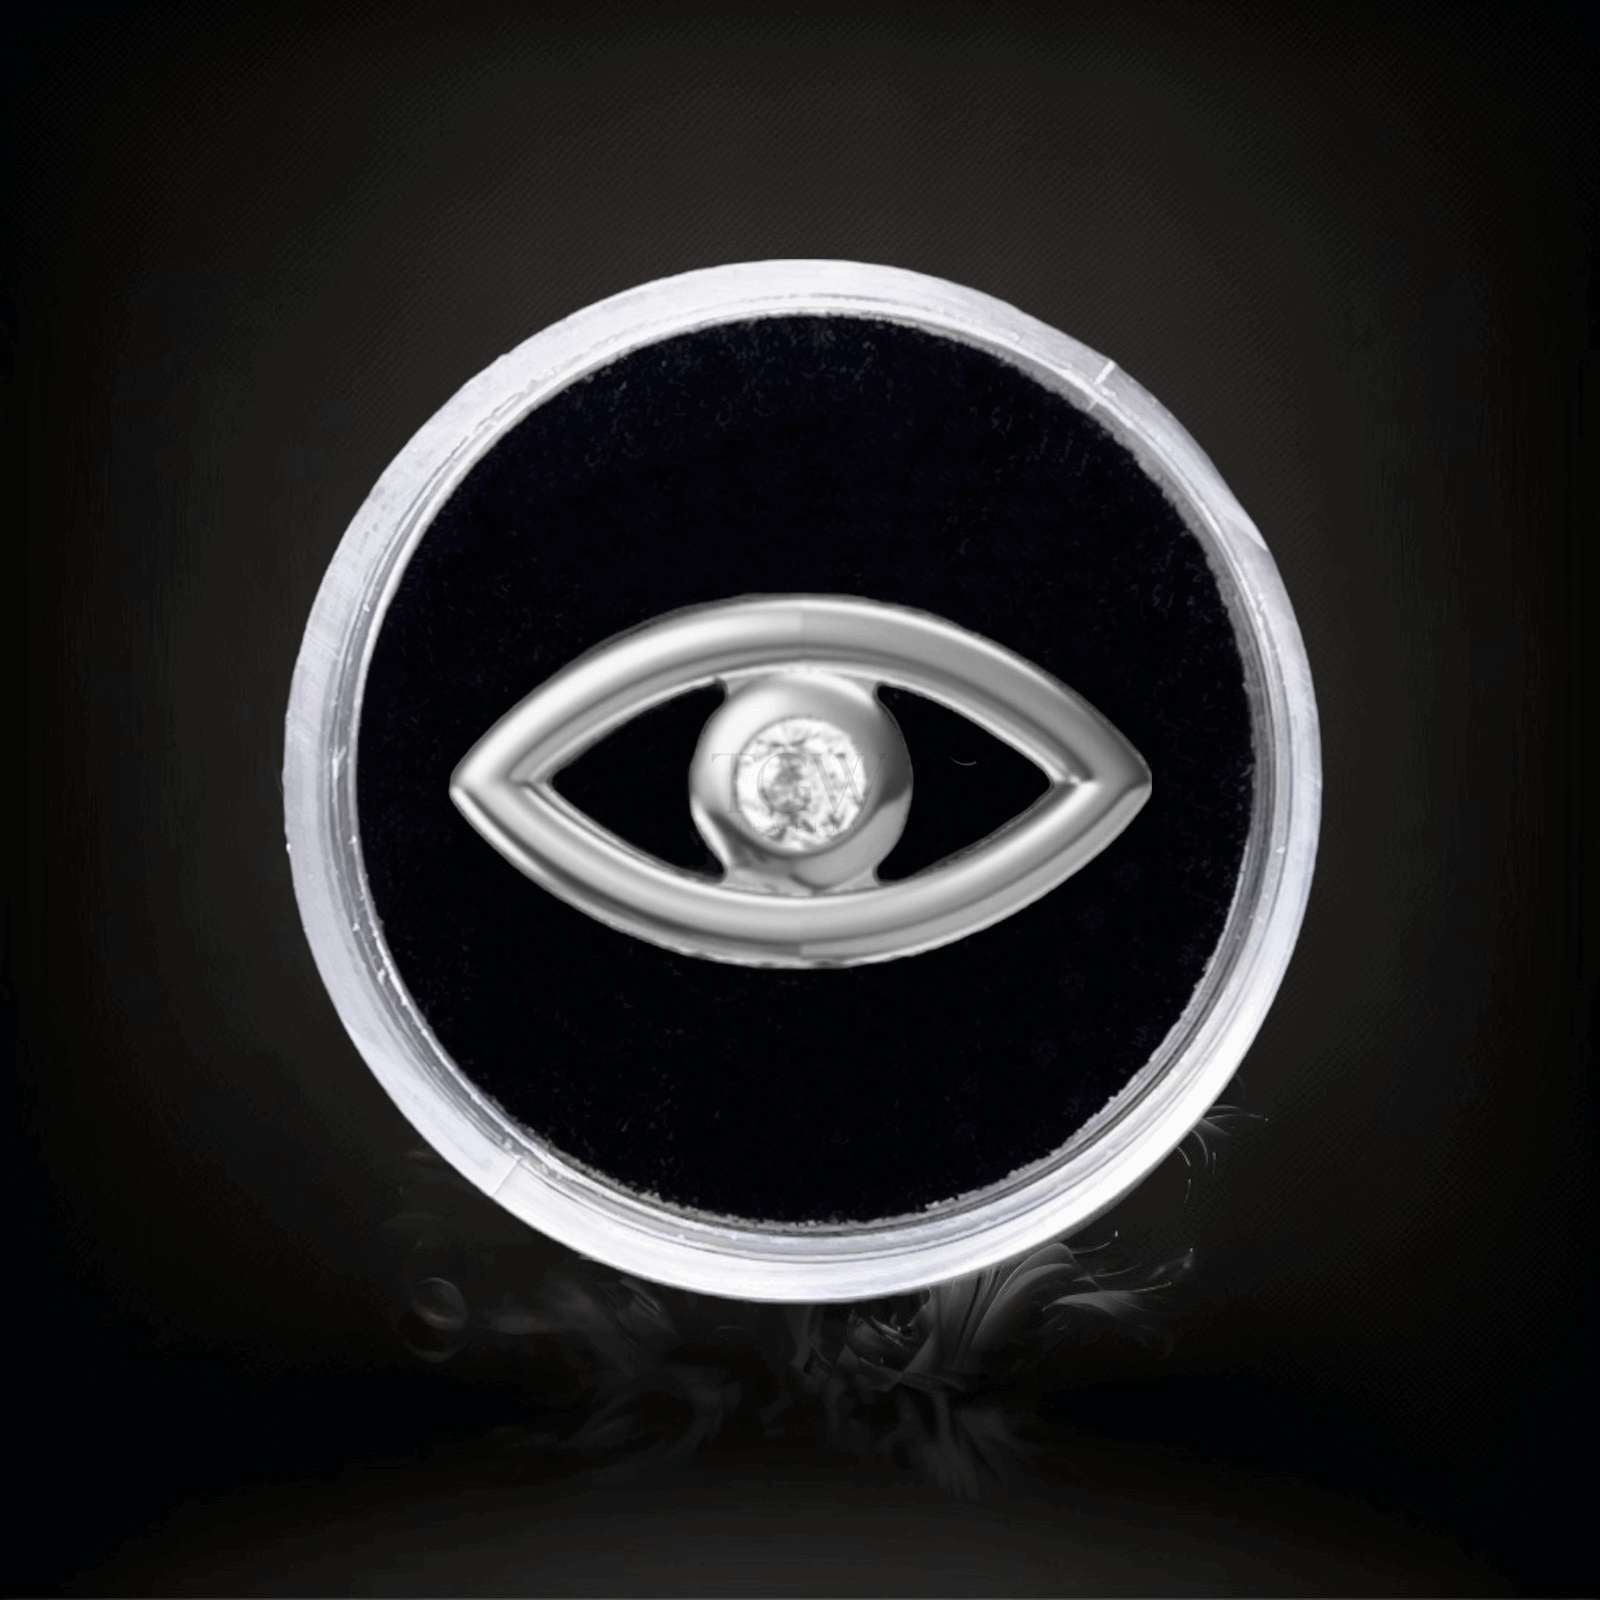 Design : Evil eye  Couleur :   Or blanc   Matériel : Or 18 carats   Dimensions : 2,3x4,2mm  Épaisseur ：0.6mm